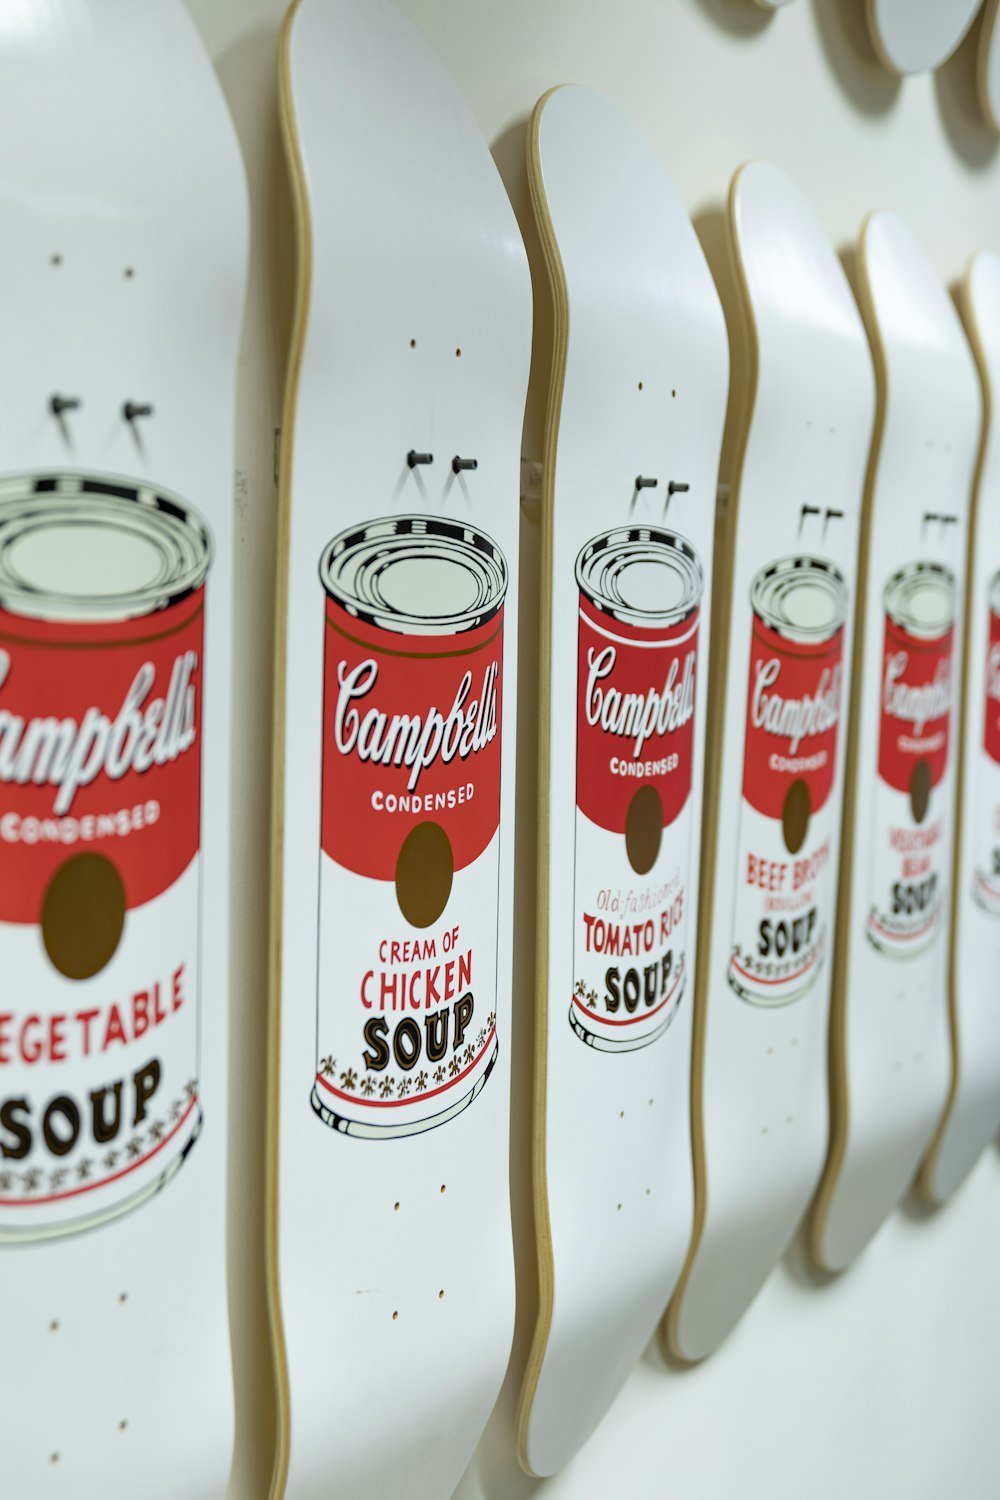 sopa Campbells branca e vermelha pode gráfico skate deck lote